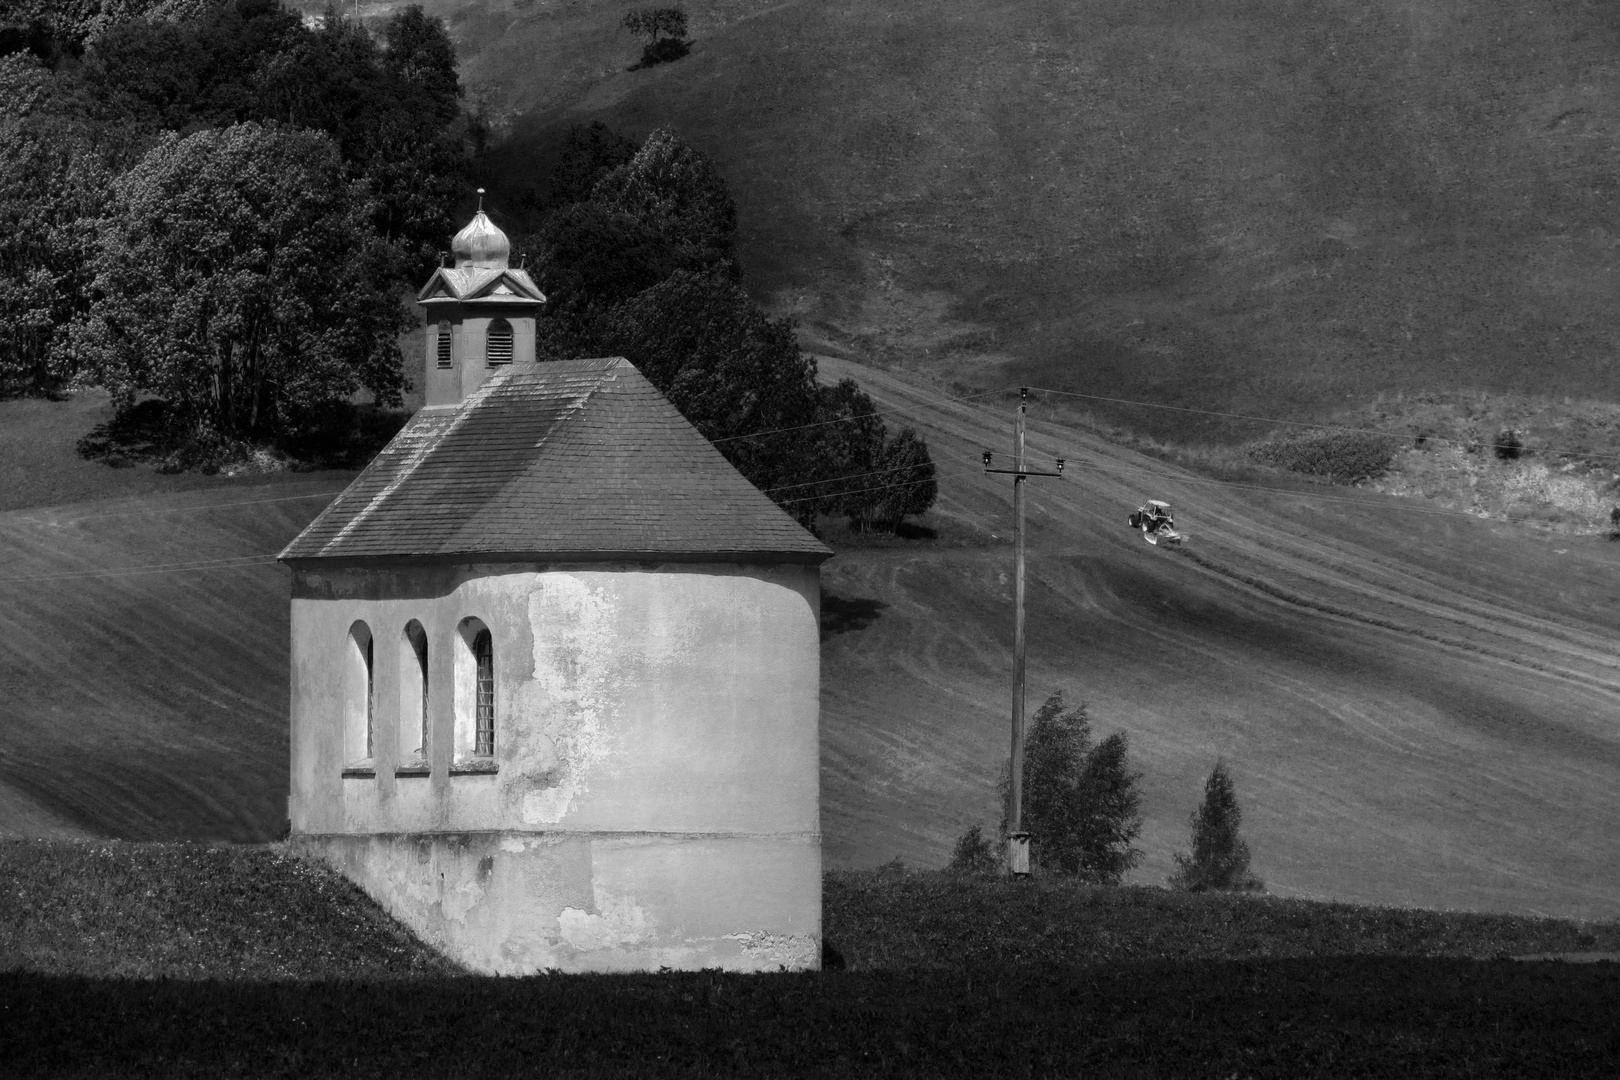 Kirche im Lechtal